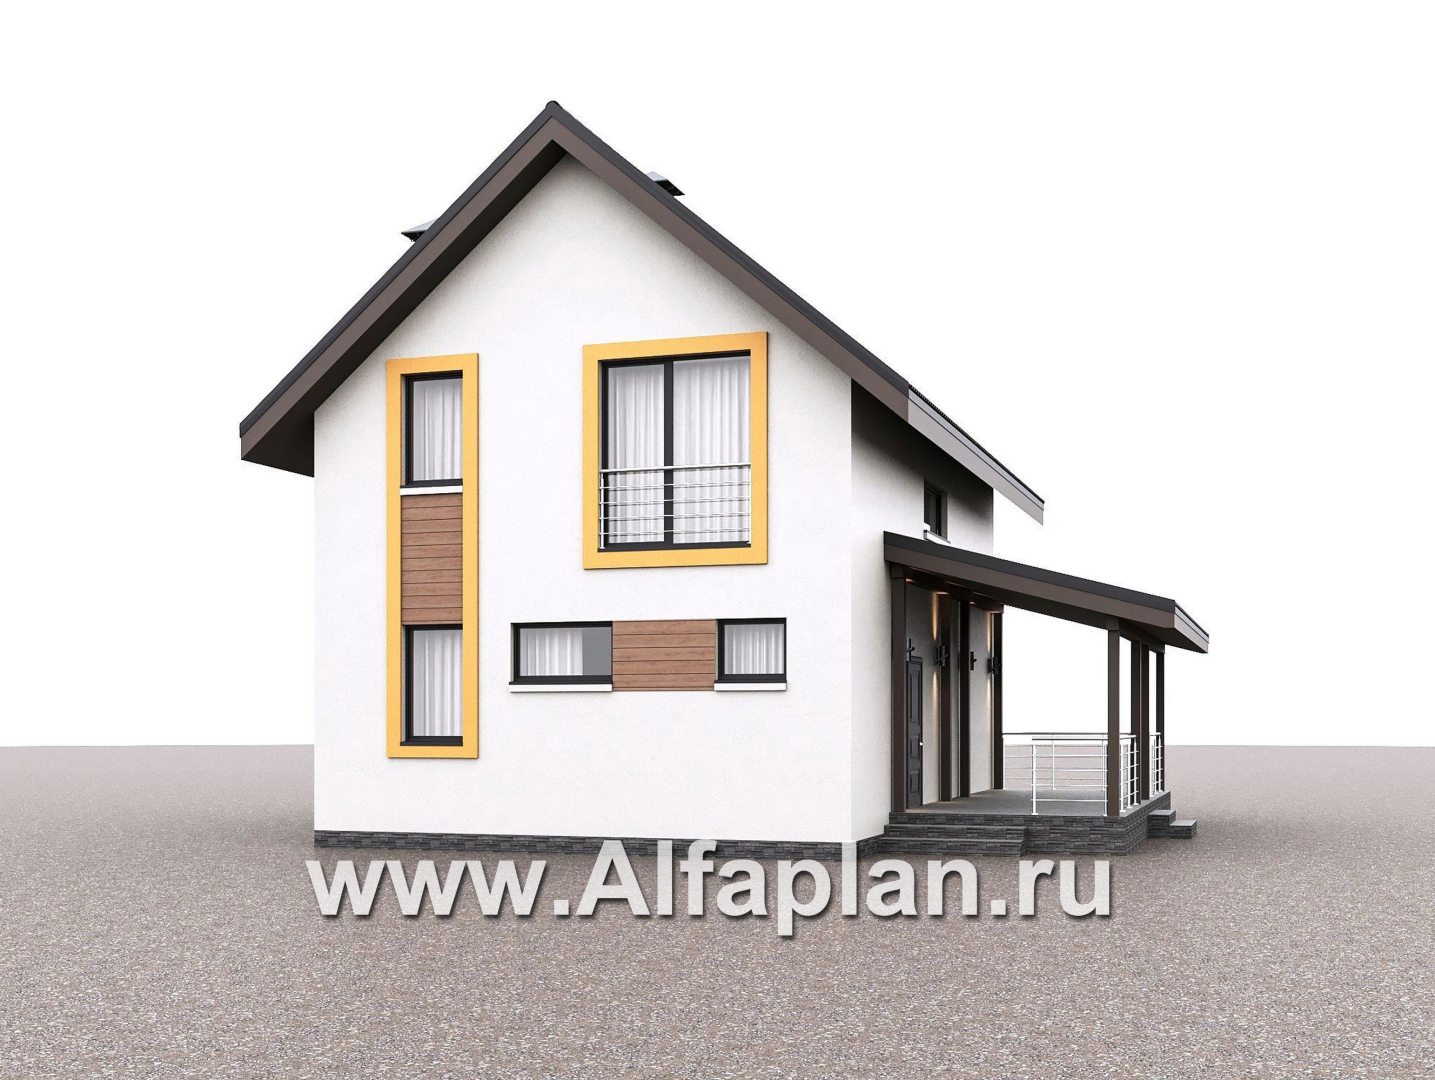 «Викинг» - проект дома, 2 этажа, с сауной и с террасой сбоку, в скандинавском стиле - дизайн дома №2